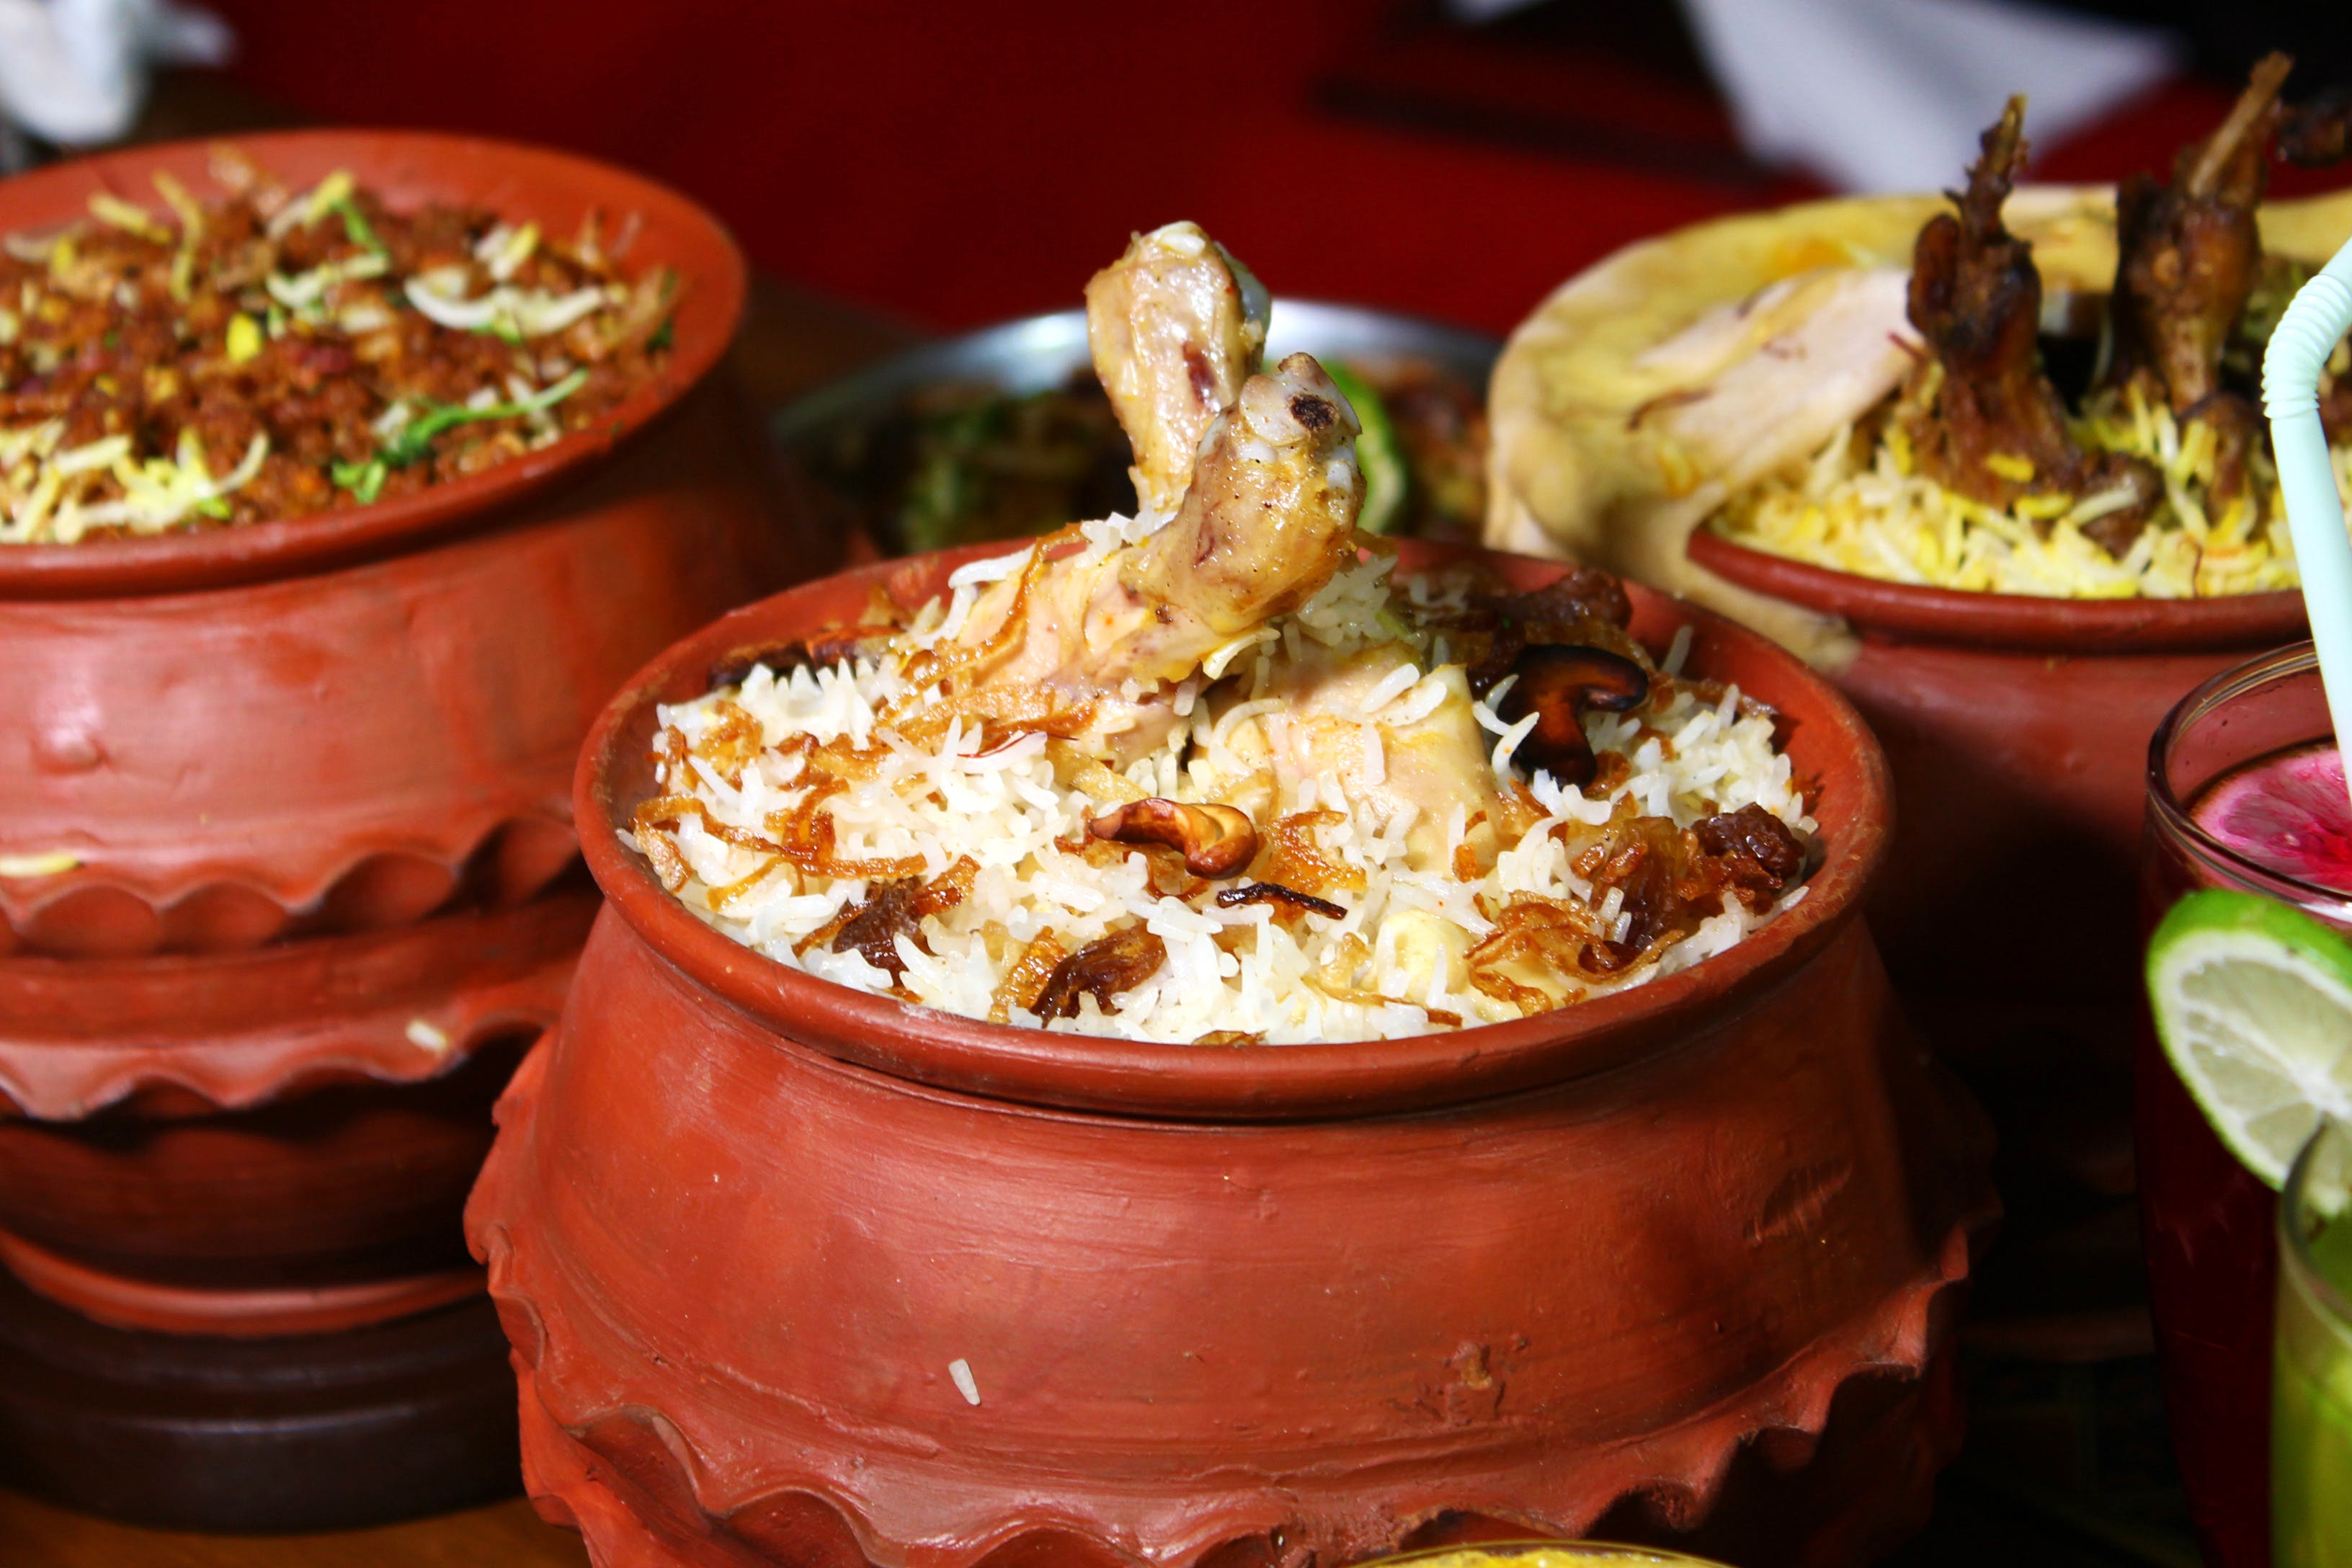 Dish,Food,Cuisine,Ingredient,Meal,Produce,Comfort food,Indian cuisine,Biryani,Pakistani cuisine